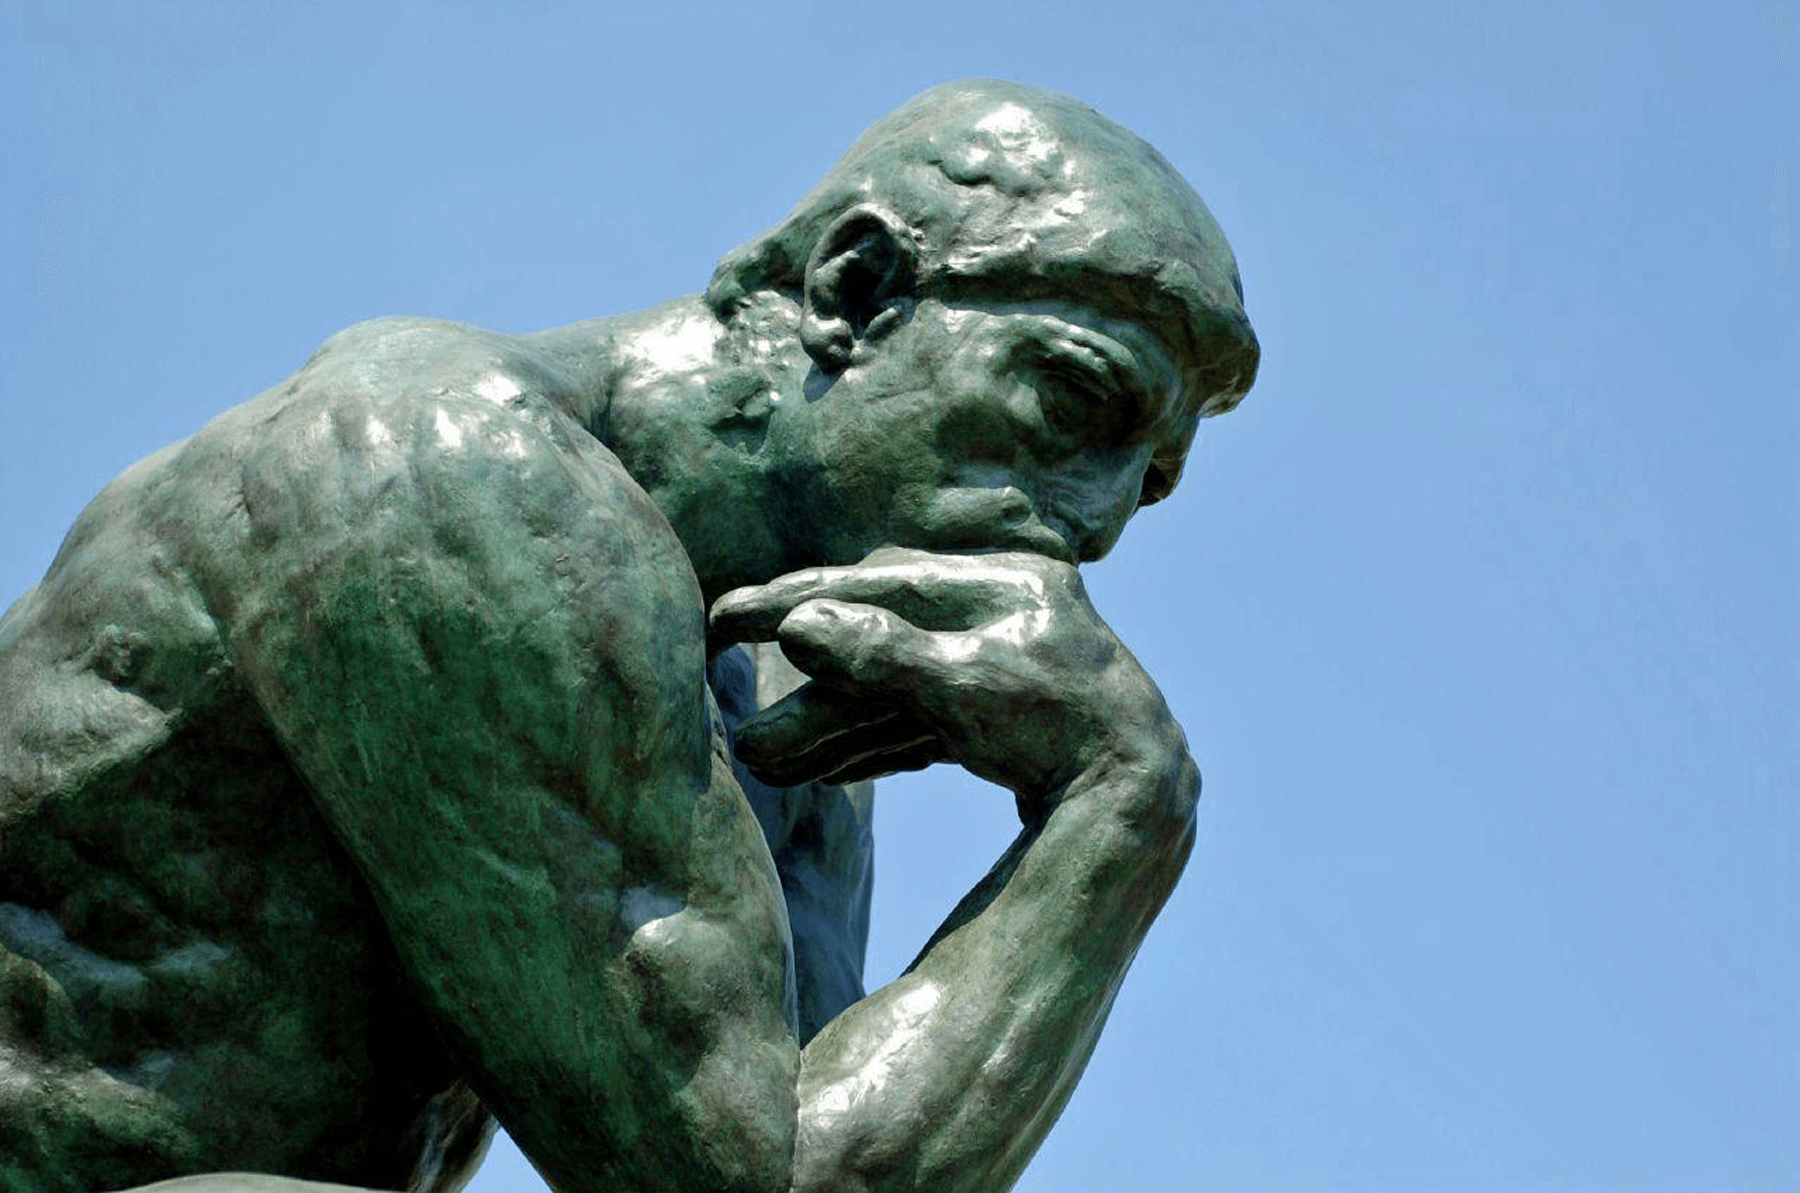 Rodins Grubleren, Filosofi- og psykologikurser hos FOF Køge Bugt